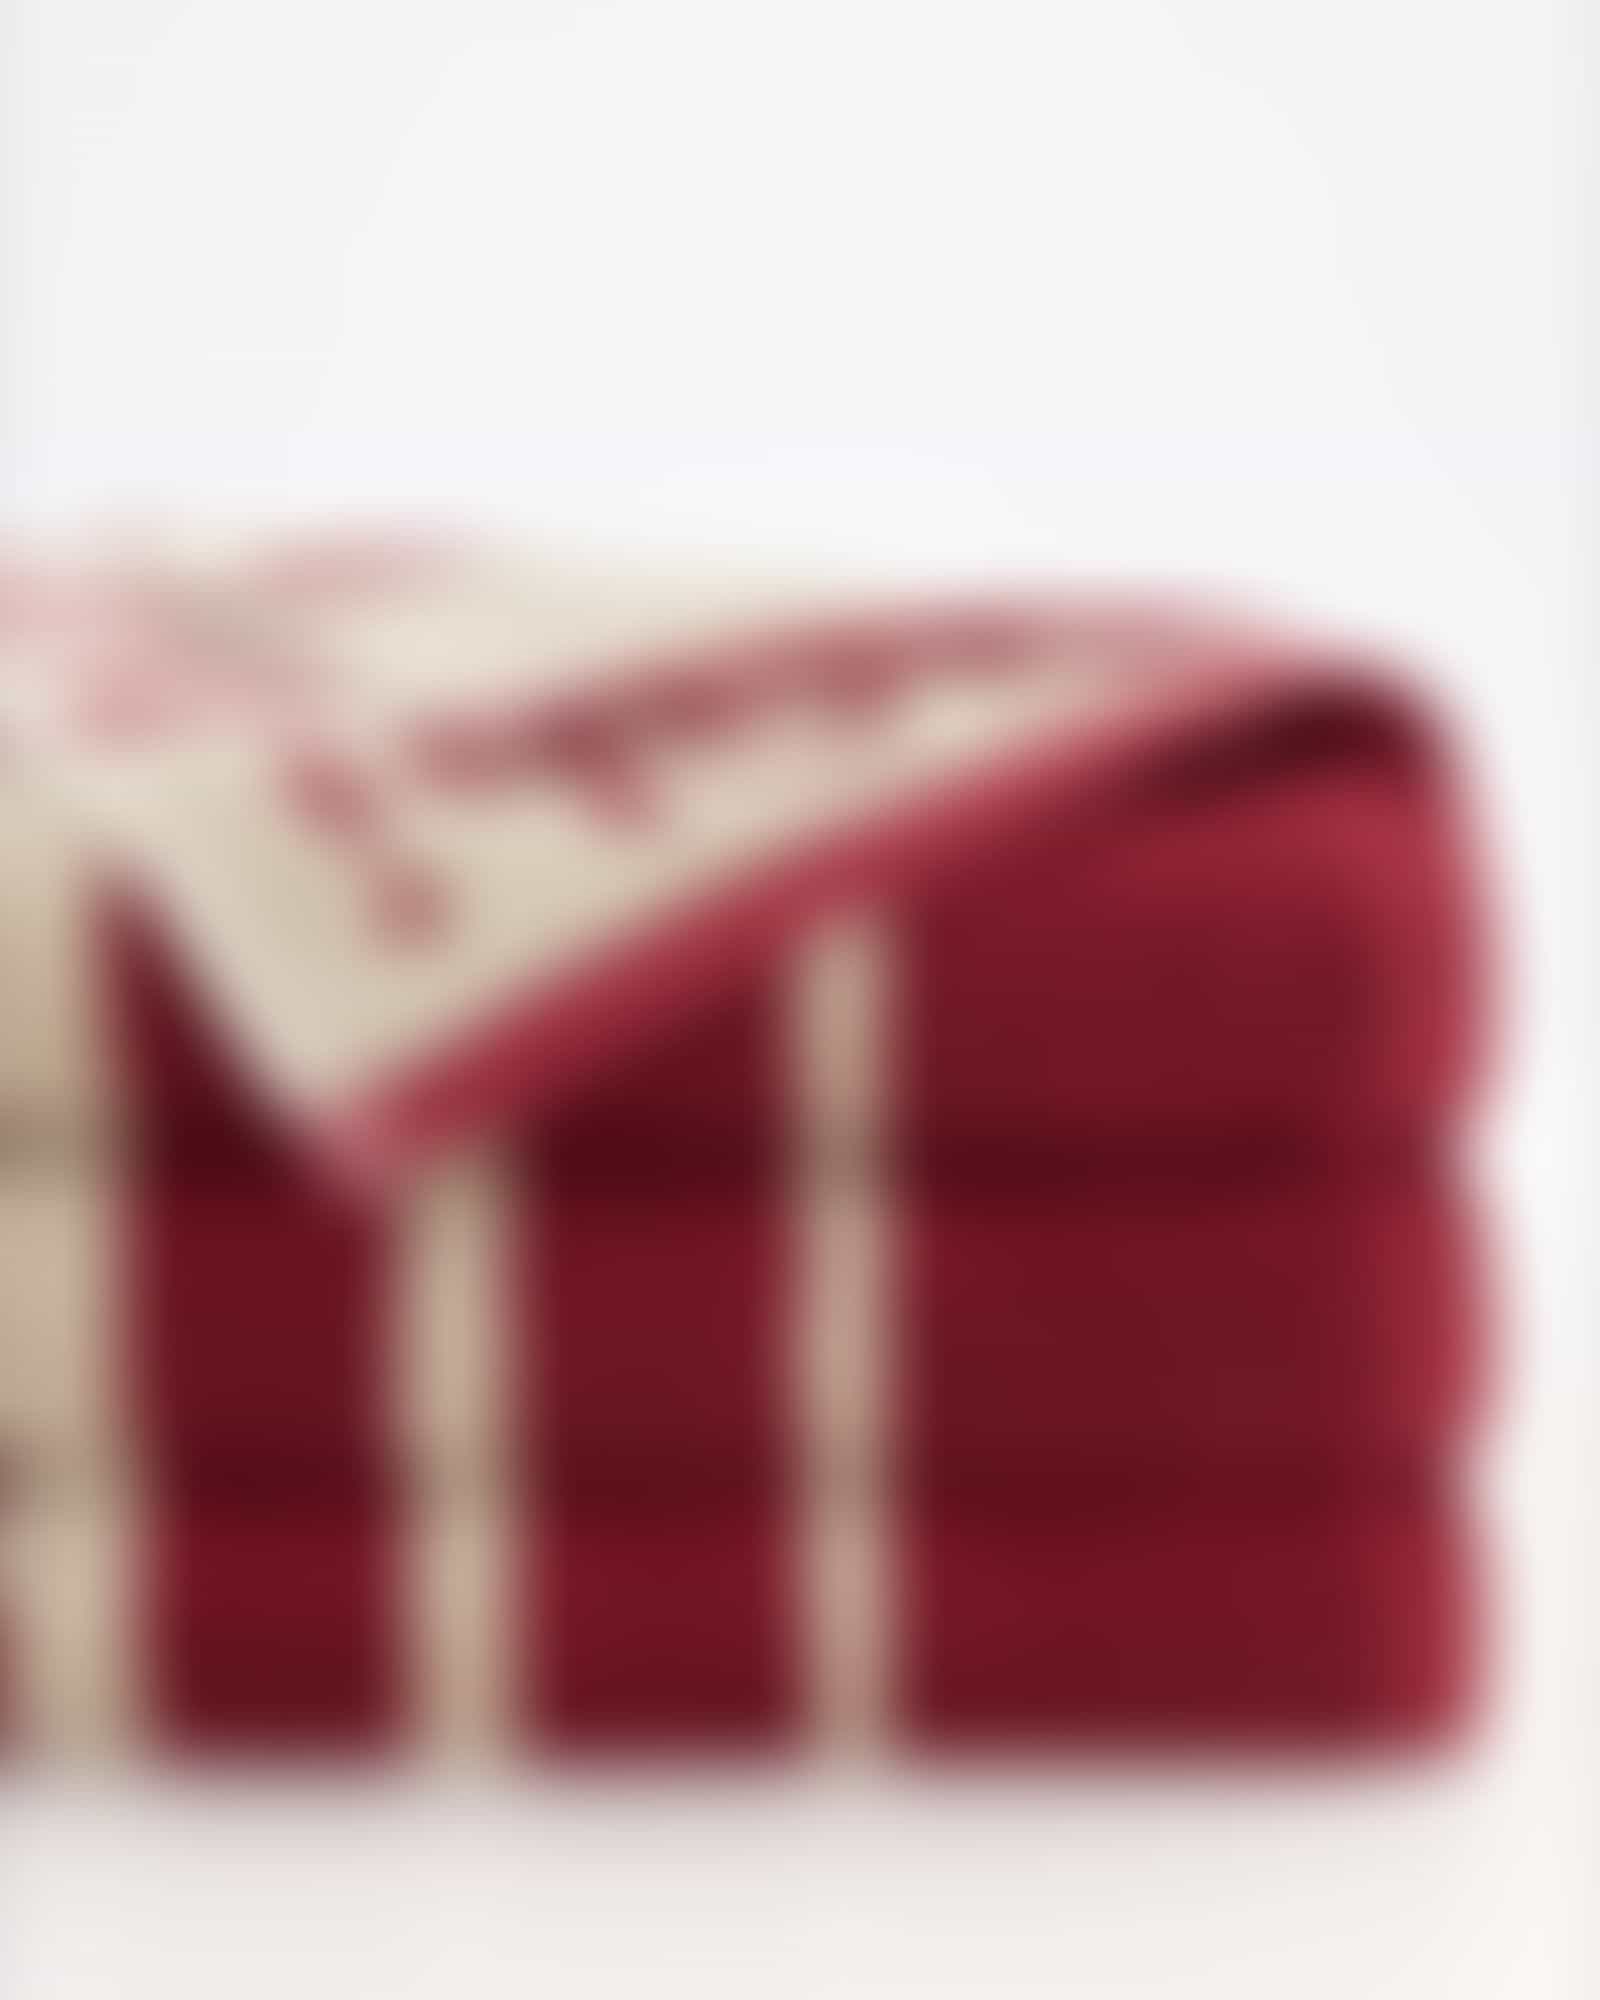 JOOP! Handtücher Select Shade 1694 - Farbe: rouge - 32 Detailbild 2